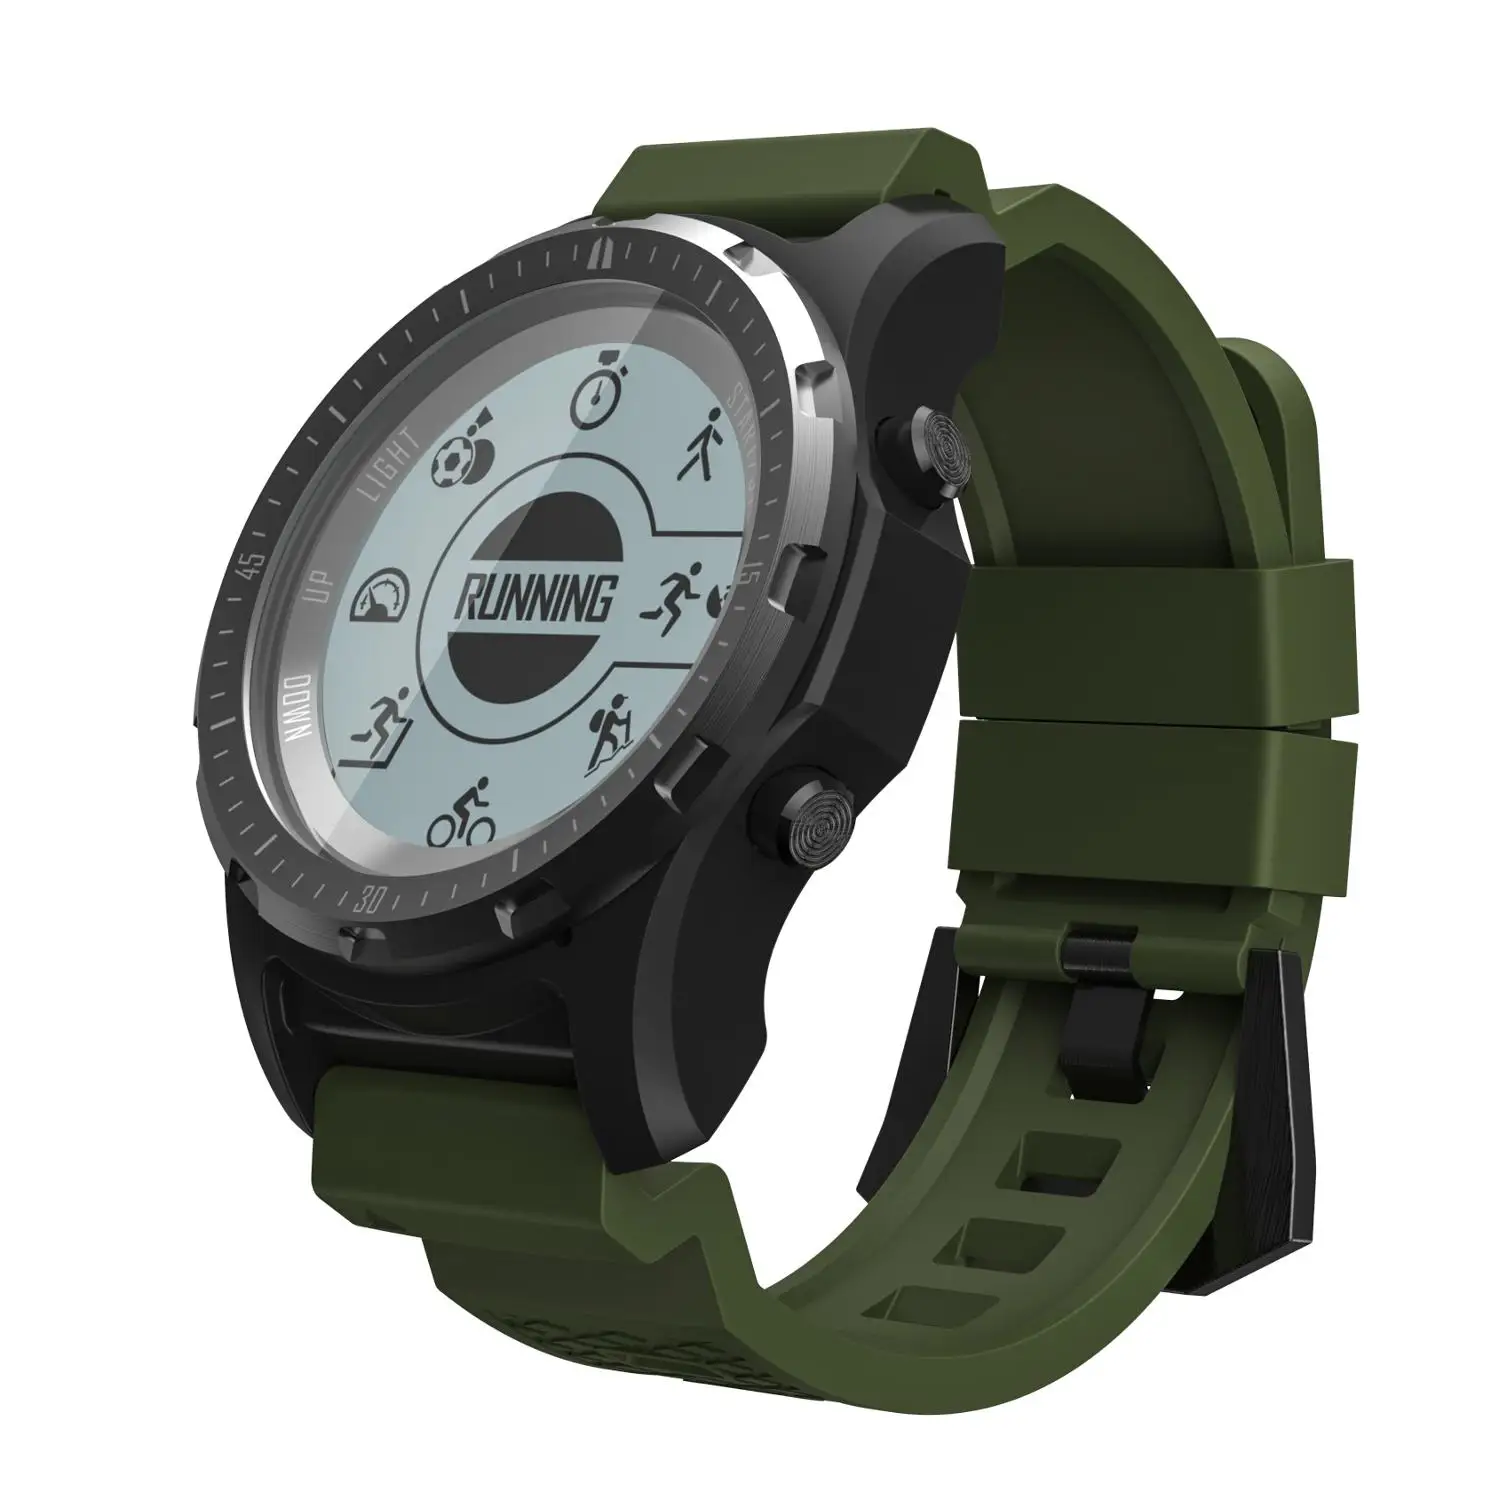 Gps S966 Смарт часы монитор сердечного ритма мульти-Спорт фитнес трекер наручные часы компас с Bluetooth высота мужские спортивные умные часы